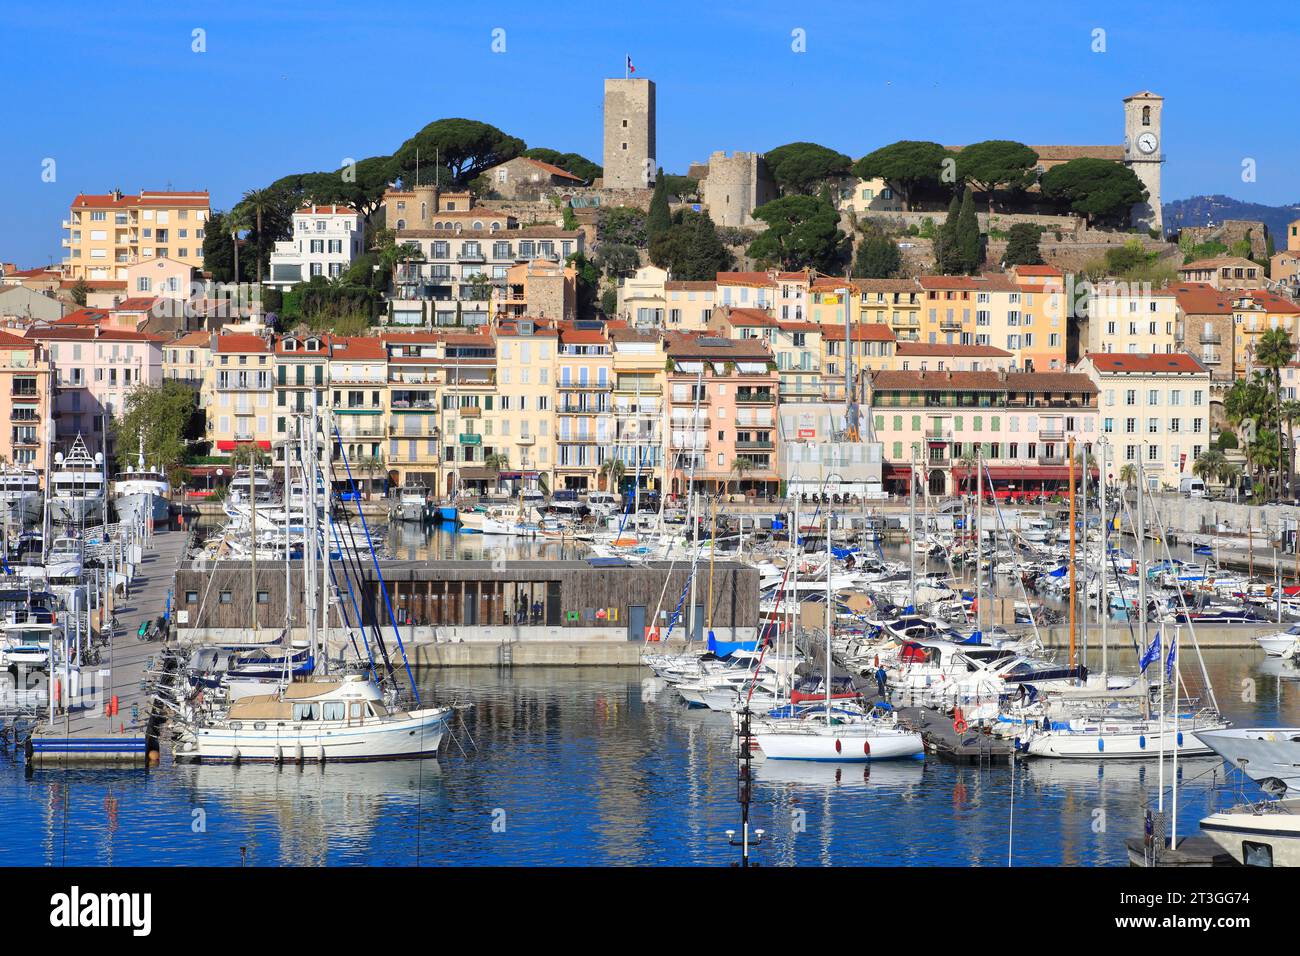 Francia, Alpi marittime, Cannes, vista del Porto Vecchio e del quartiere Suquet con la chiesa di Notre Dame d'Esperance e il Château de la Castre Foto Stock